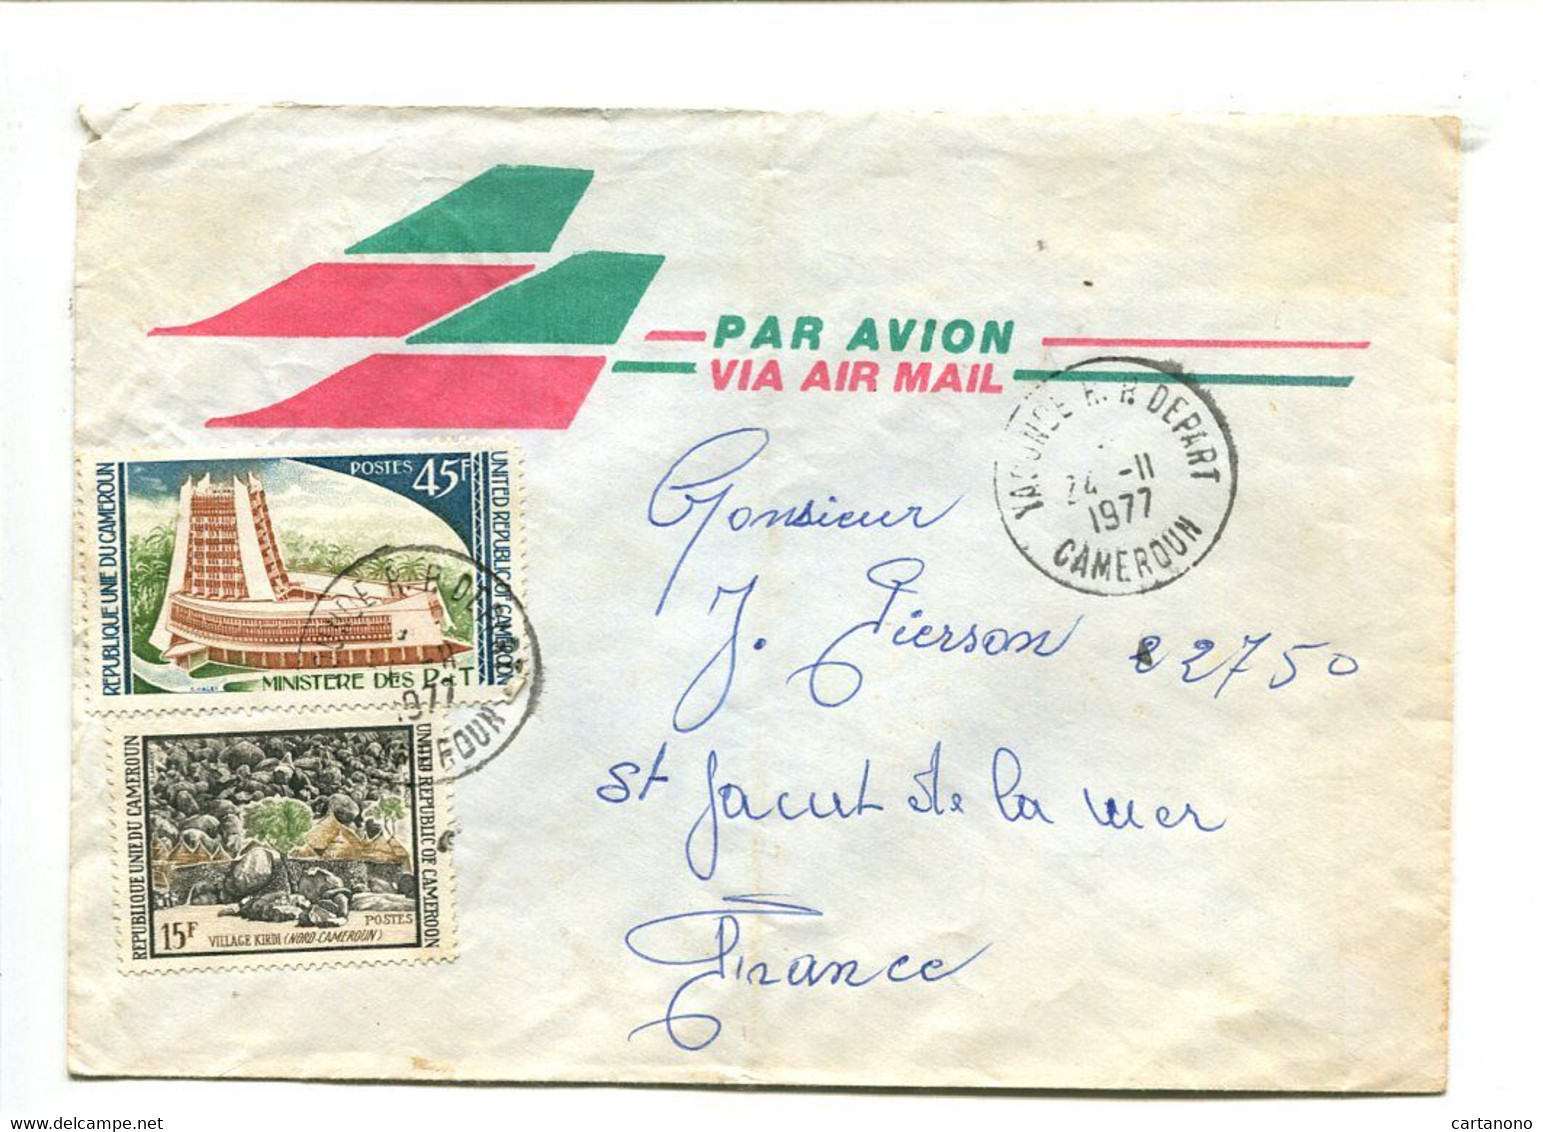 CAMEROUN Yaoude R.P. Départ 1977 - Affranchissement Sur Lettre Par Avion - Cameroun (1960-...)